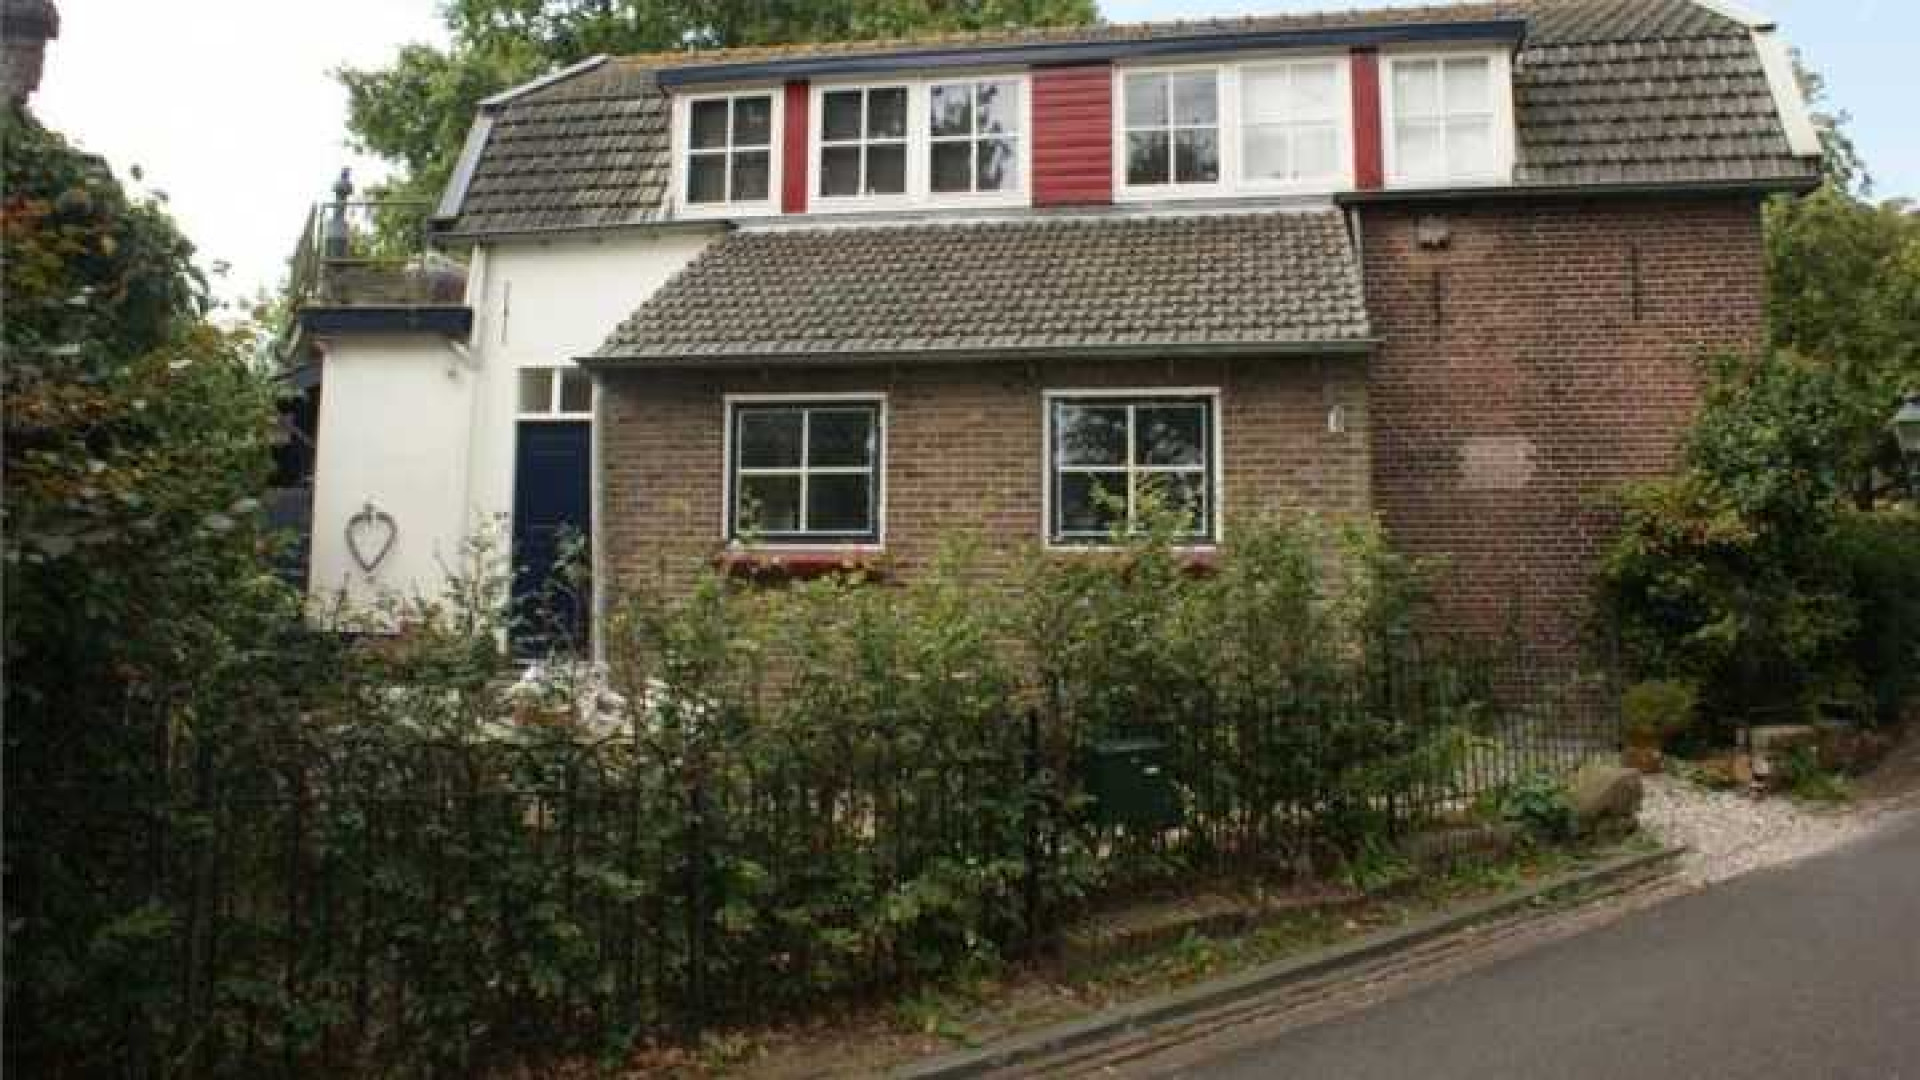 Herman van Veen haalt na eerdere prijsverlaging zijn huis uit de verkoop. Zie foto's 13